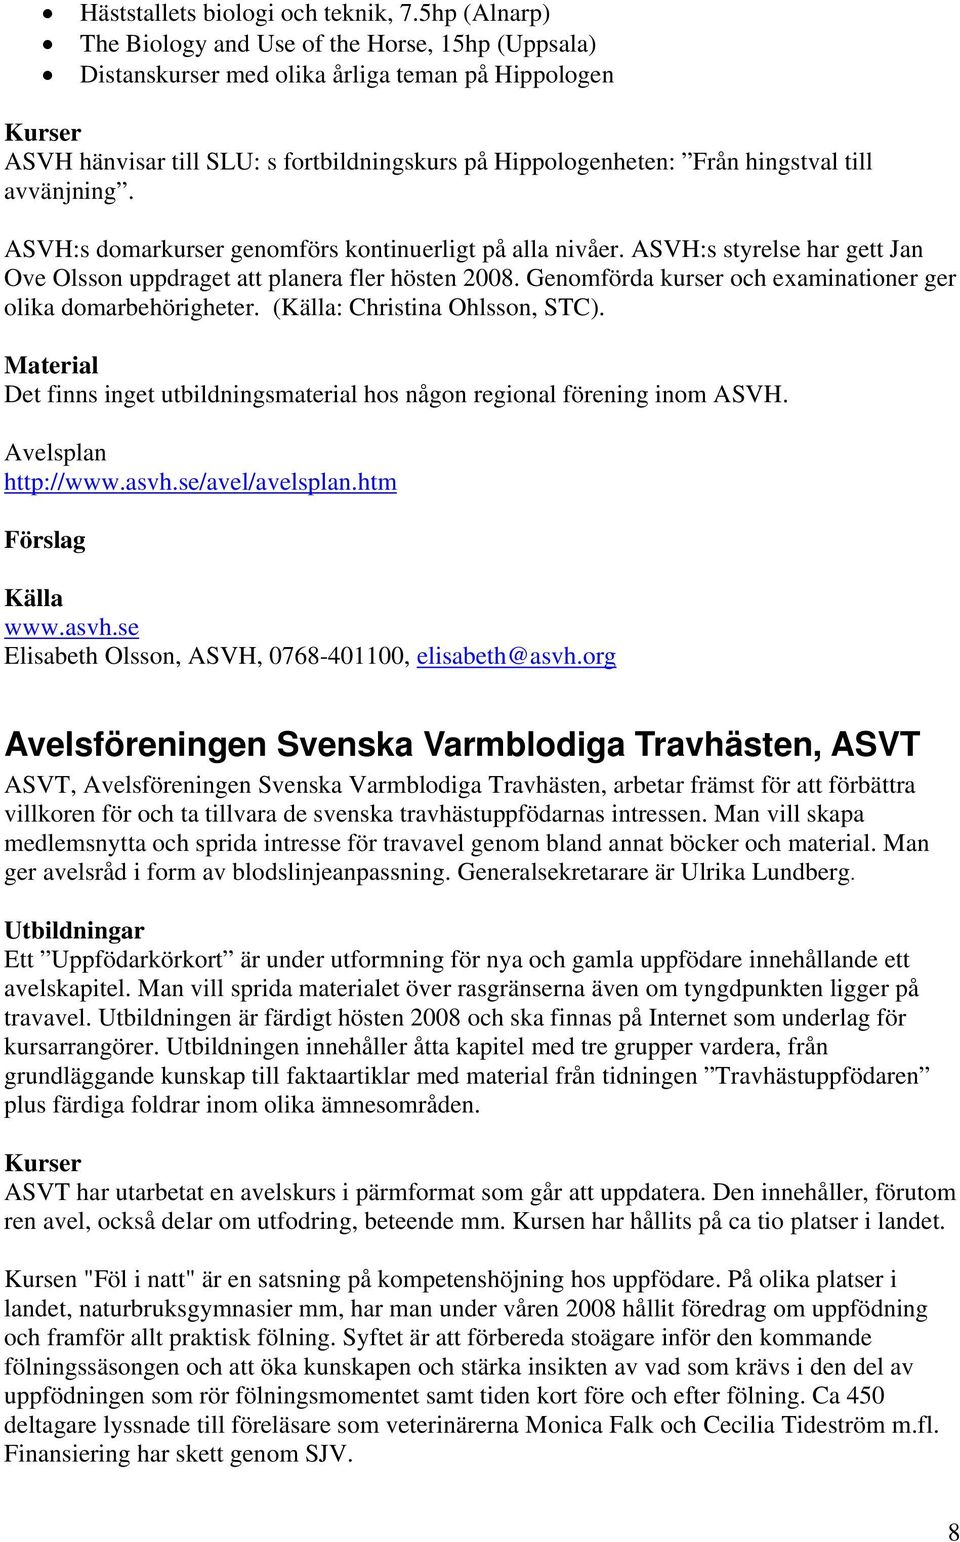 avvänjning. ASVH:s domarkurser genomförs kontinuerligt på alla nivåer. ASVH:s styrelse har gett Jan Ove Olsson uppdraget att planera fler hösten 2008.